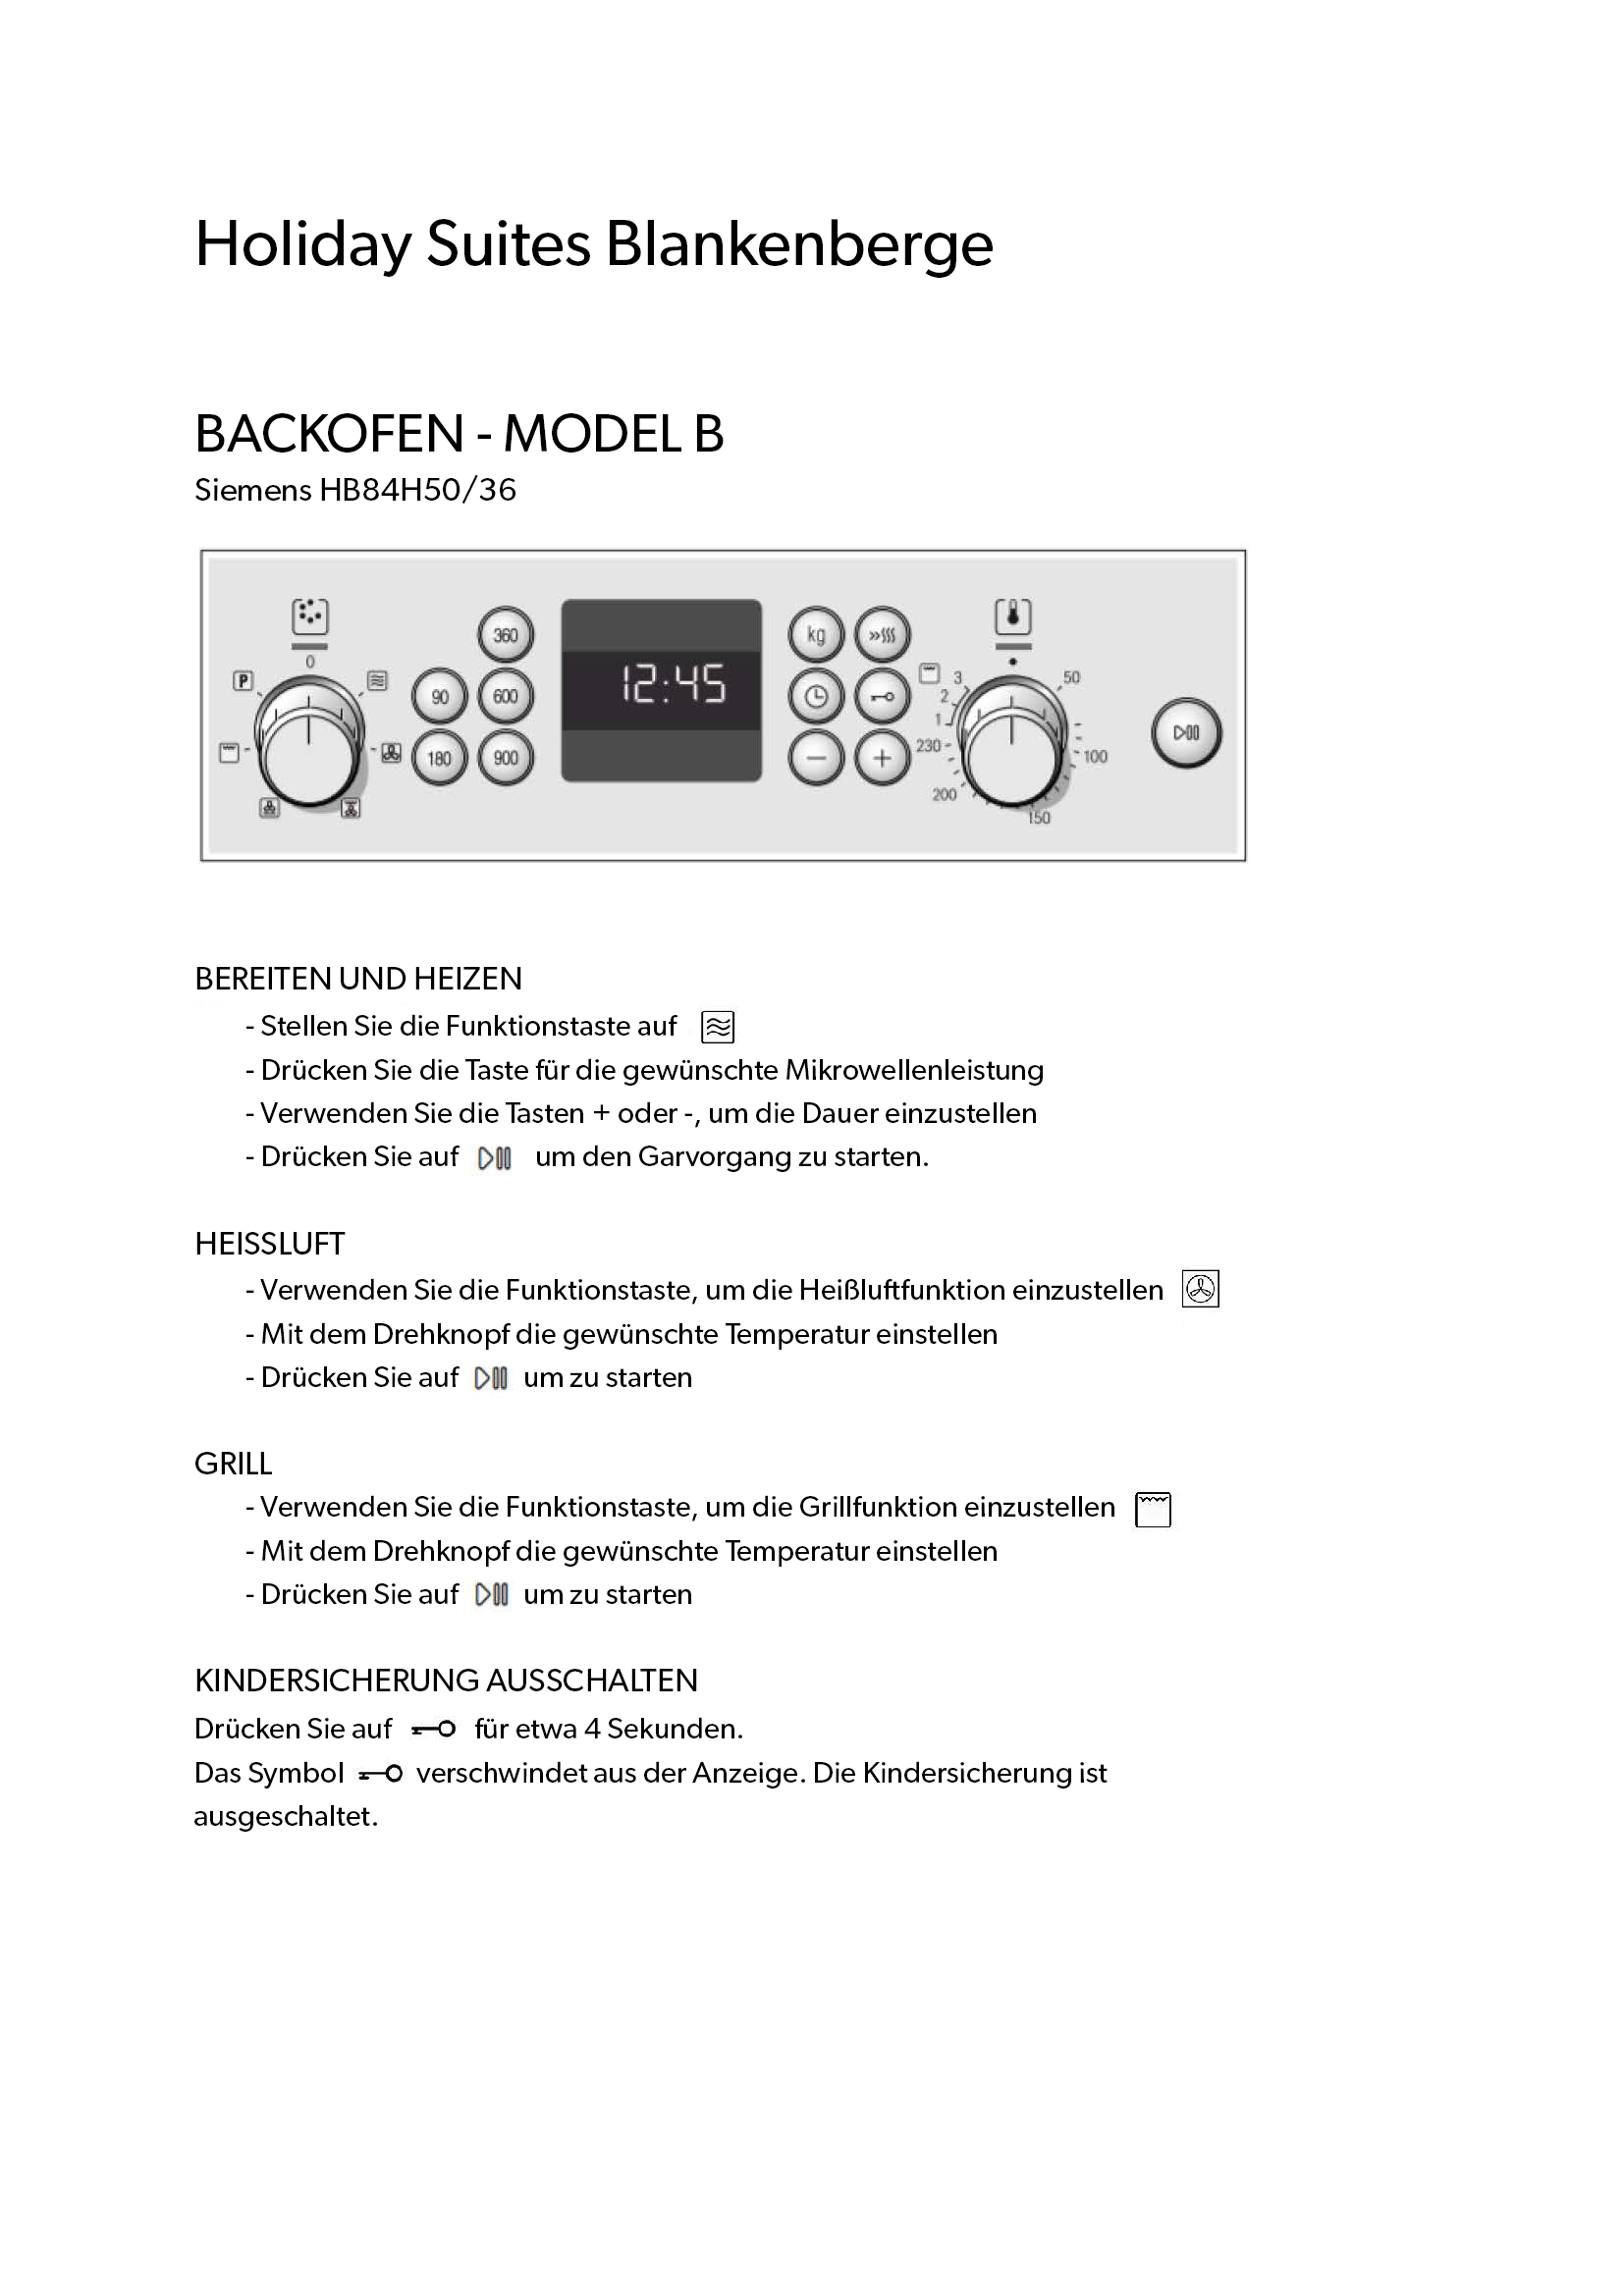 Blankenberge_-_Oven_-_Model_B.jpg